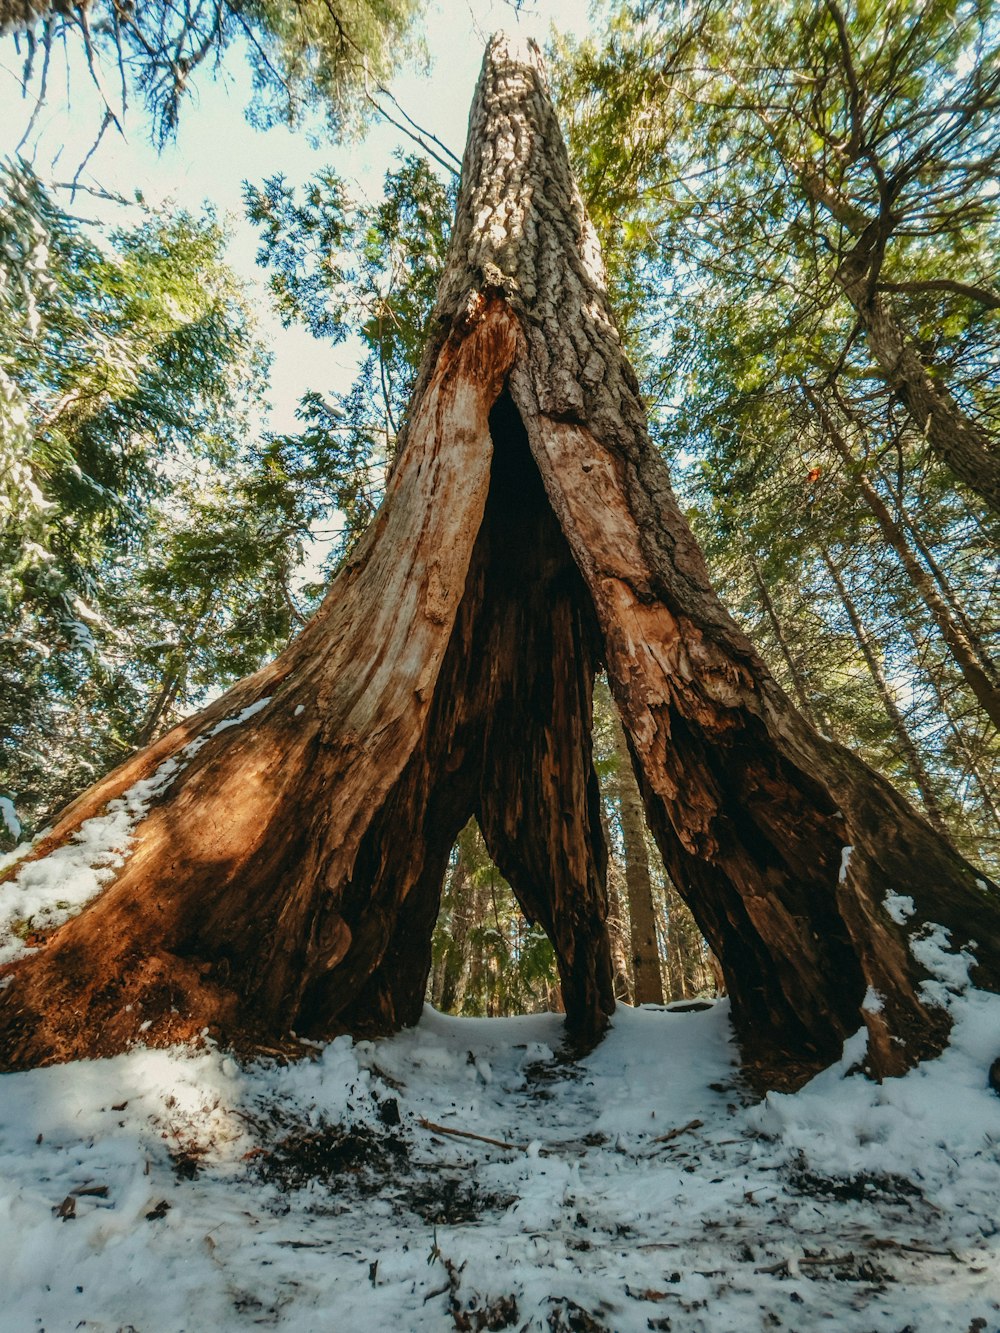 日中の雪に覆われた地面に茶色の木の幹